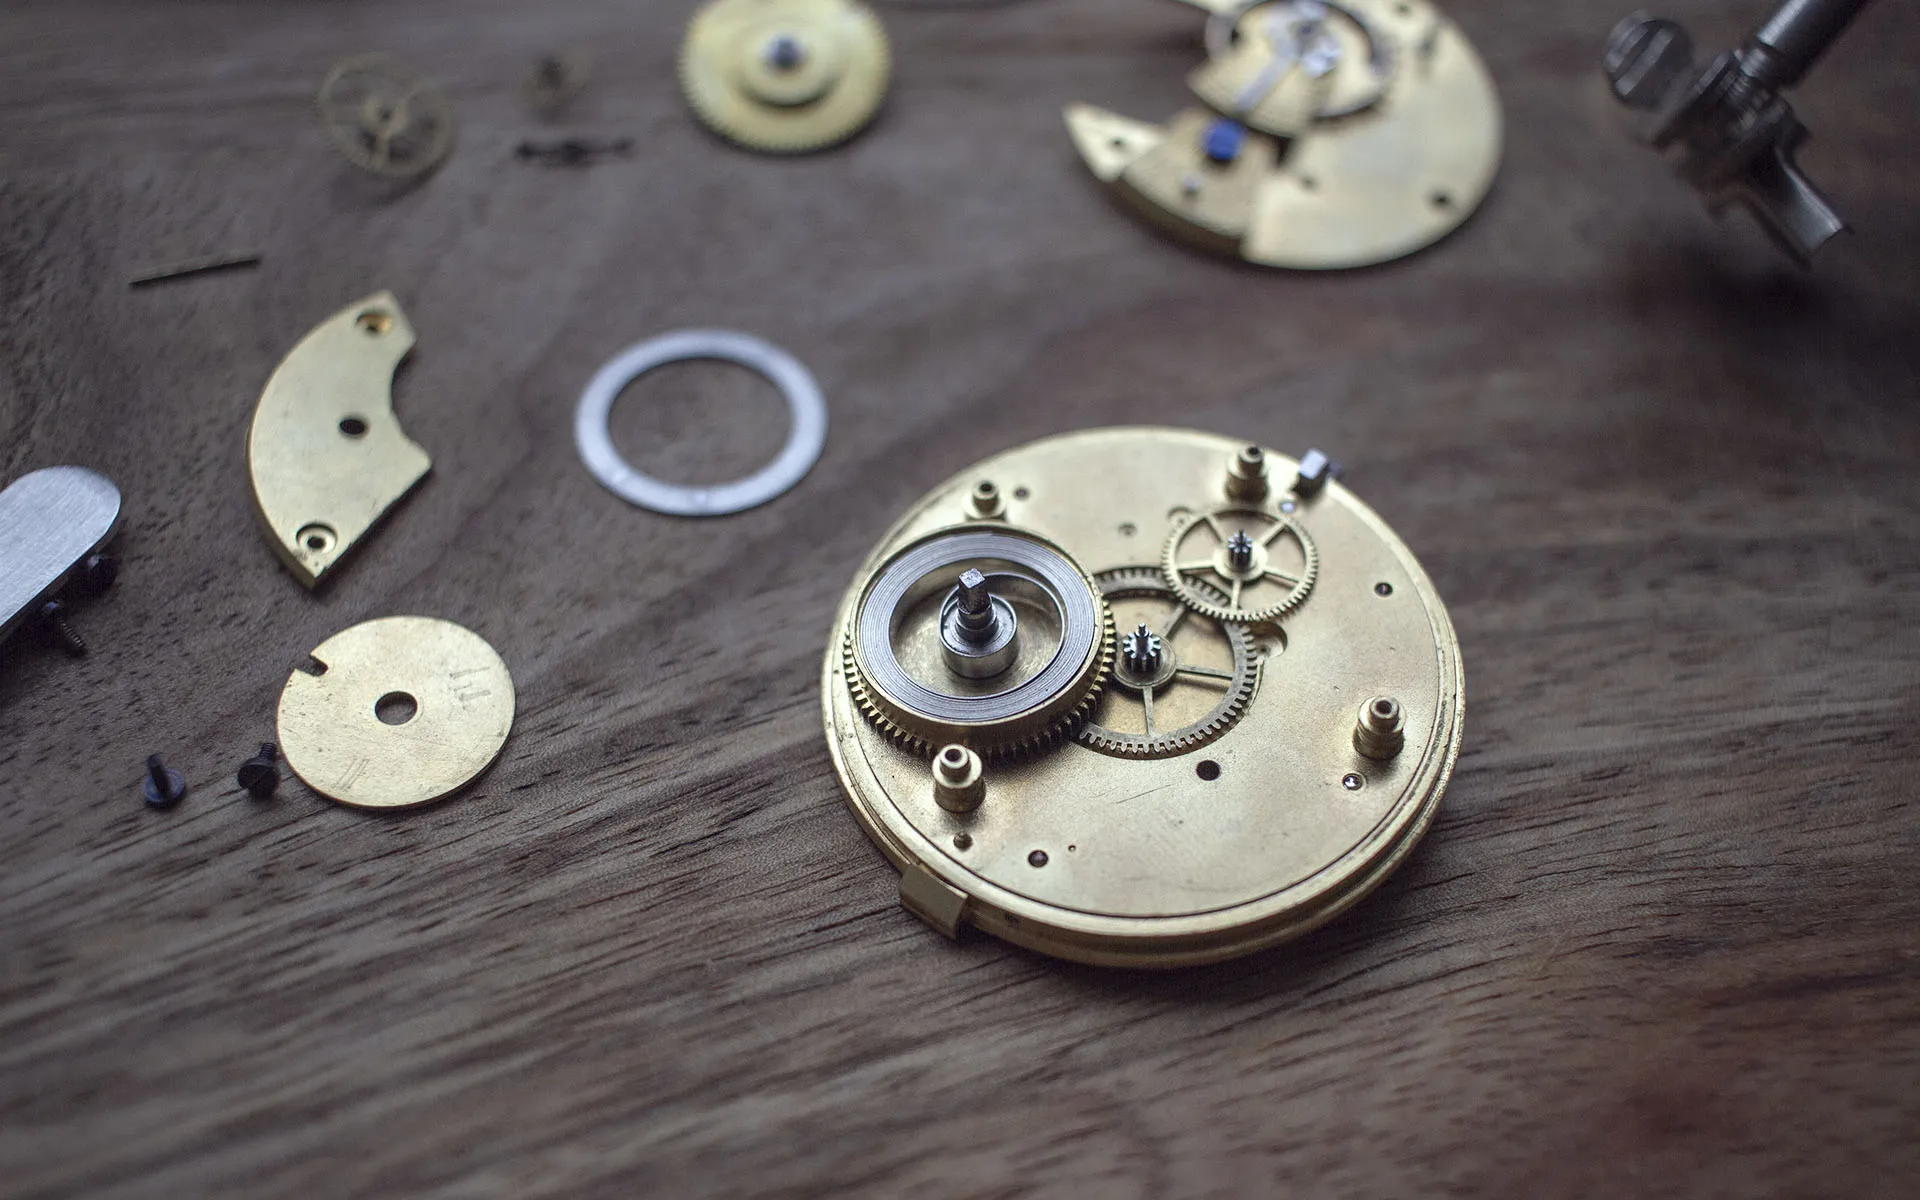 Closeup of the mainspring of a mechanical watch mechanism.